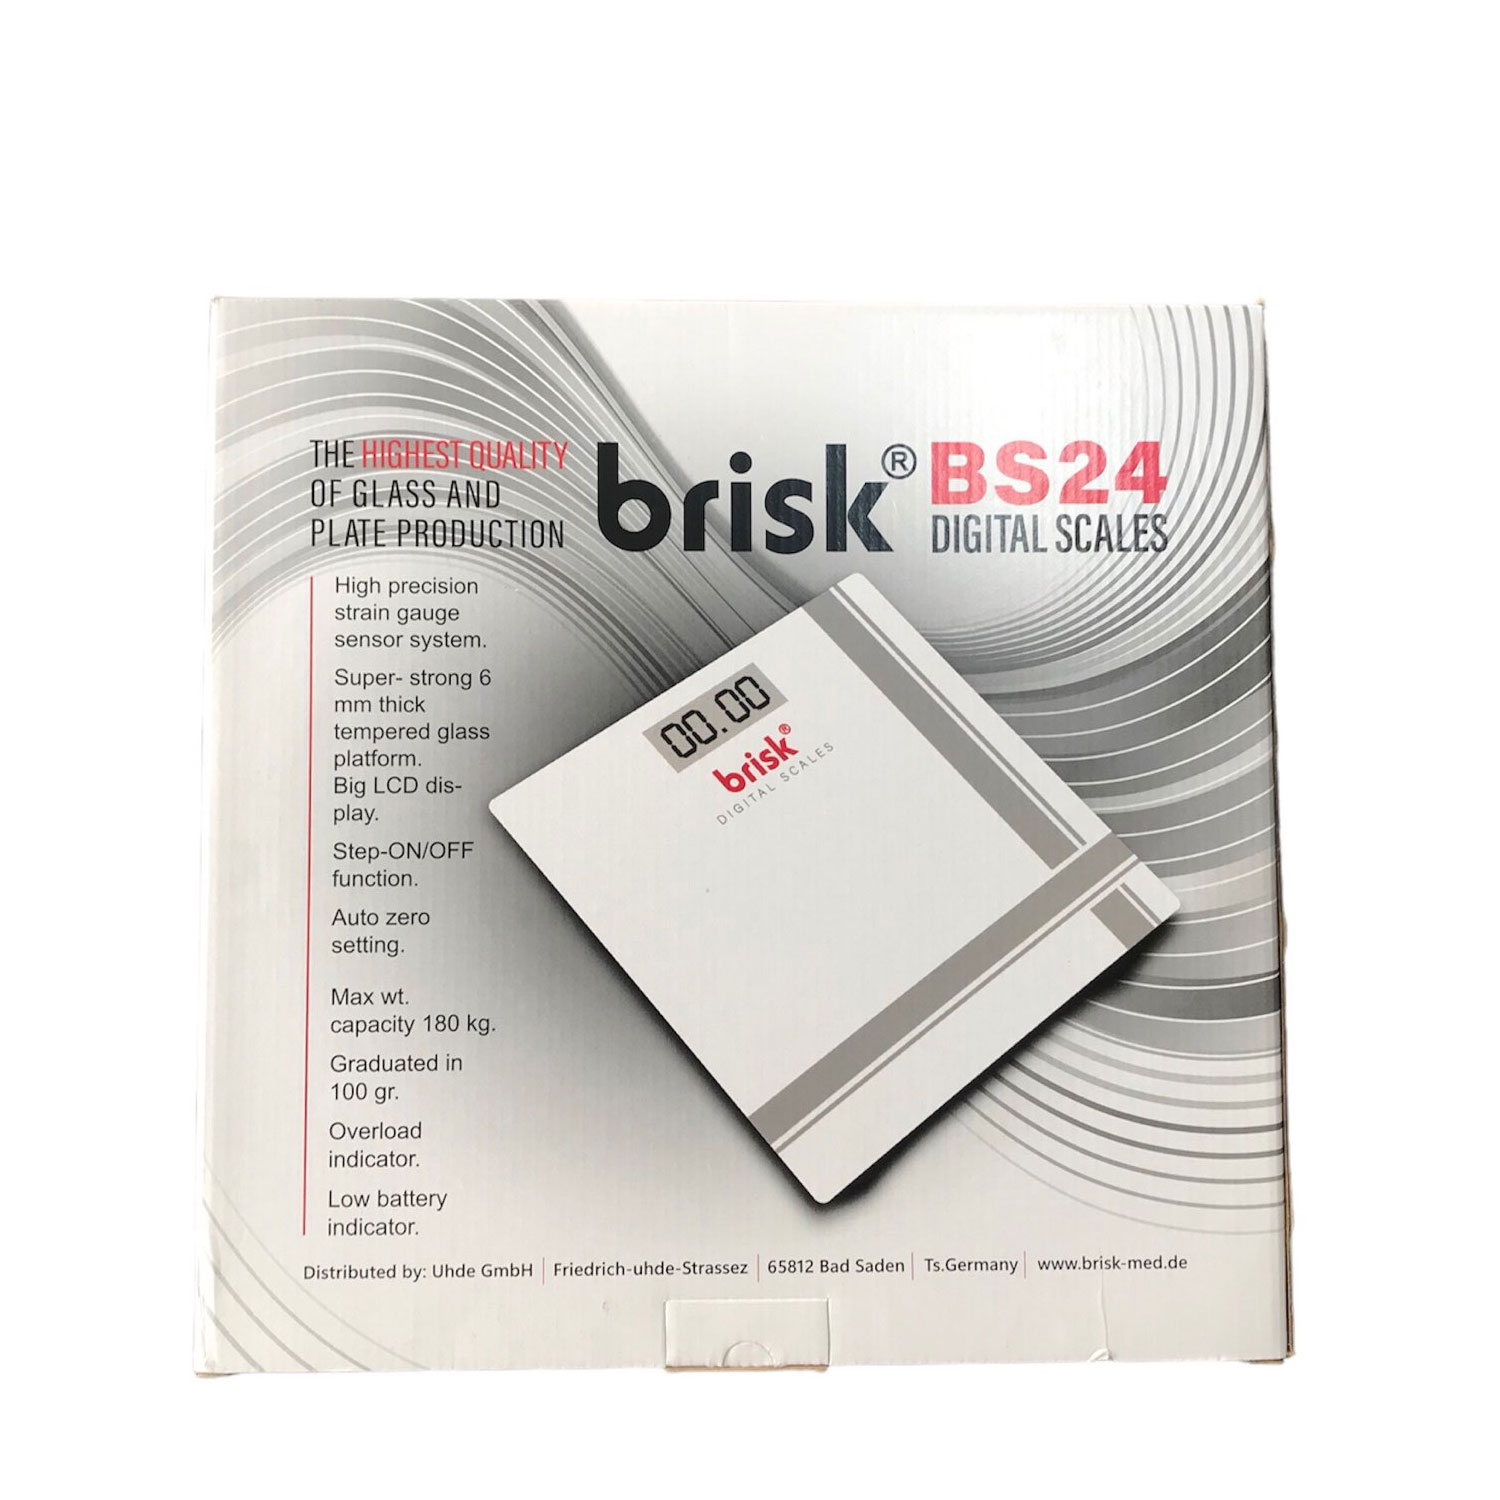  ترازو دیجیتال بریسک مدل BS 24 -  - 4